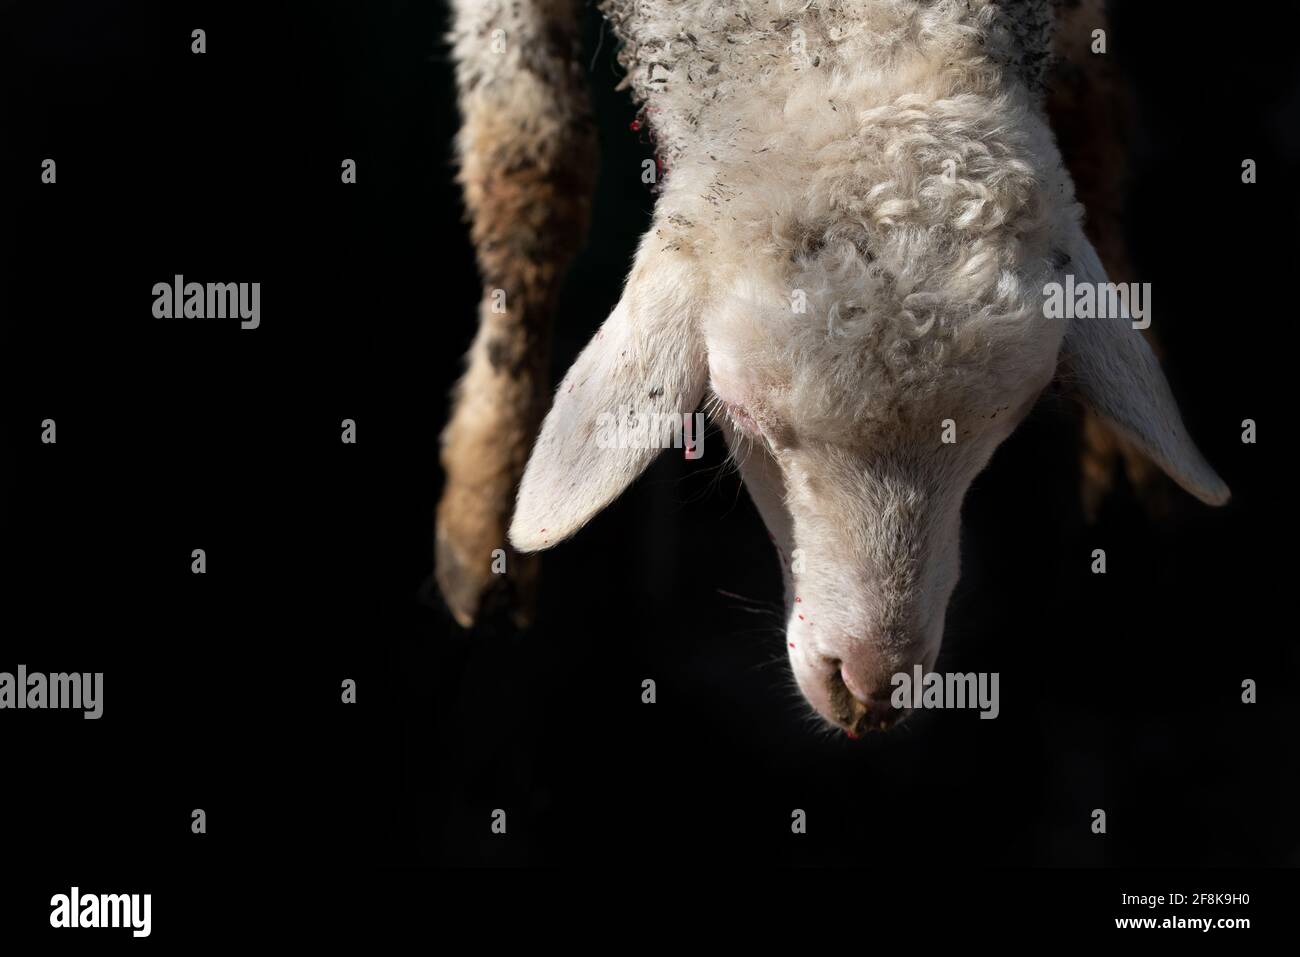 Gros plan et détail d'un agneau qui est traditionnellement abattu. La tête et les pieds avant pendent devant un arrière-plan sombre. Banque D'Images